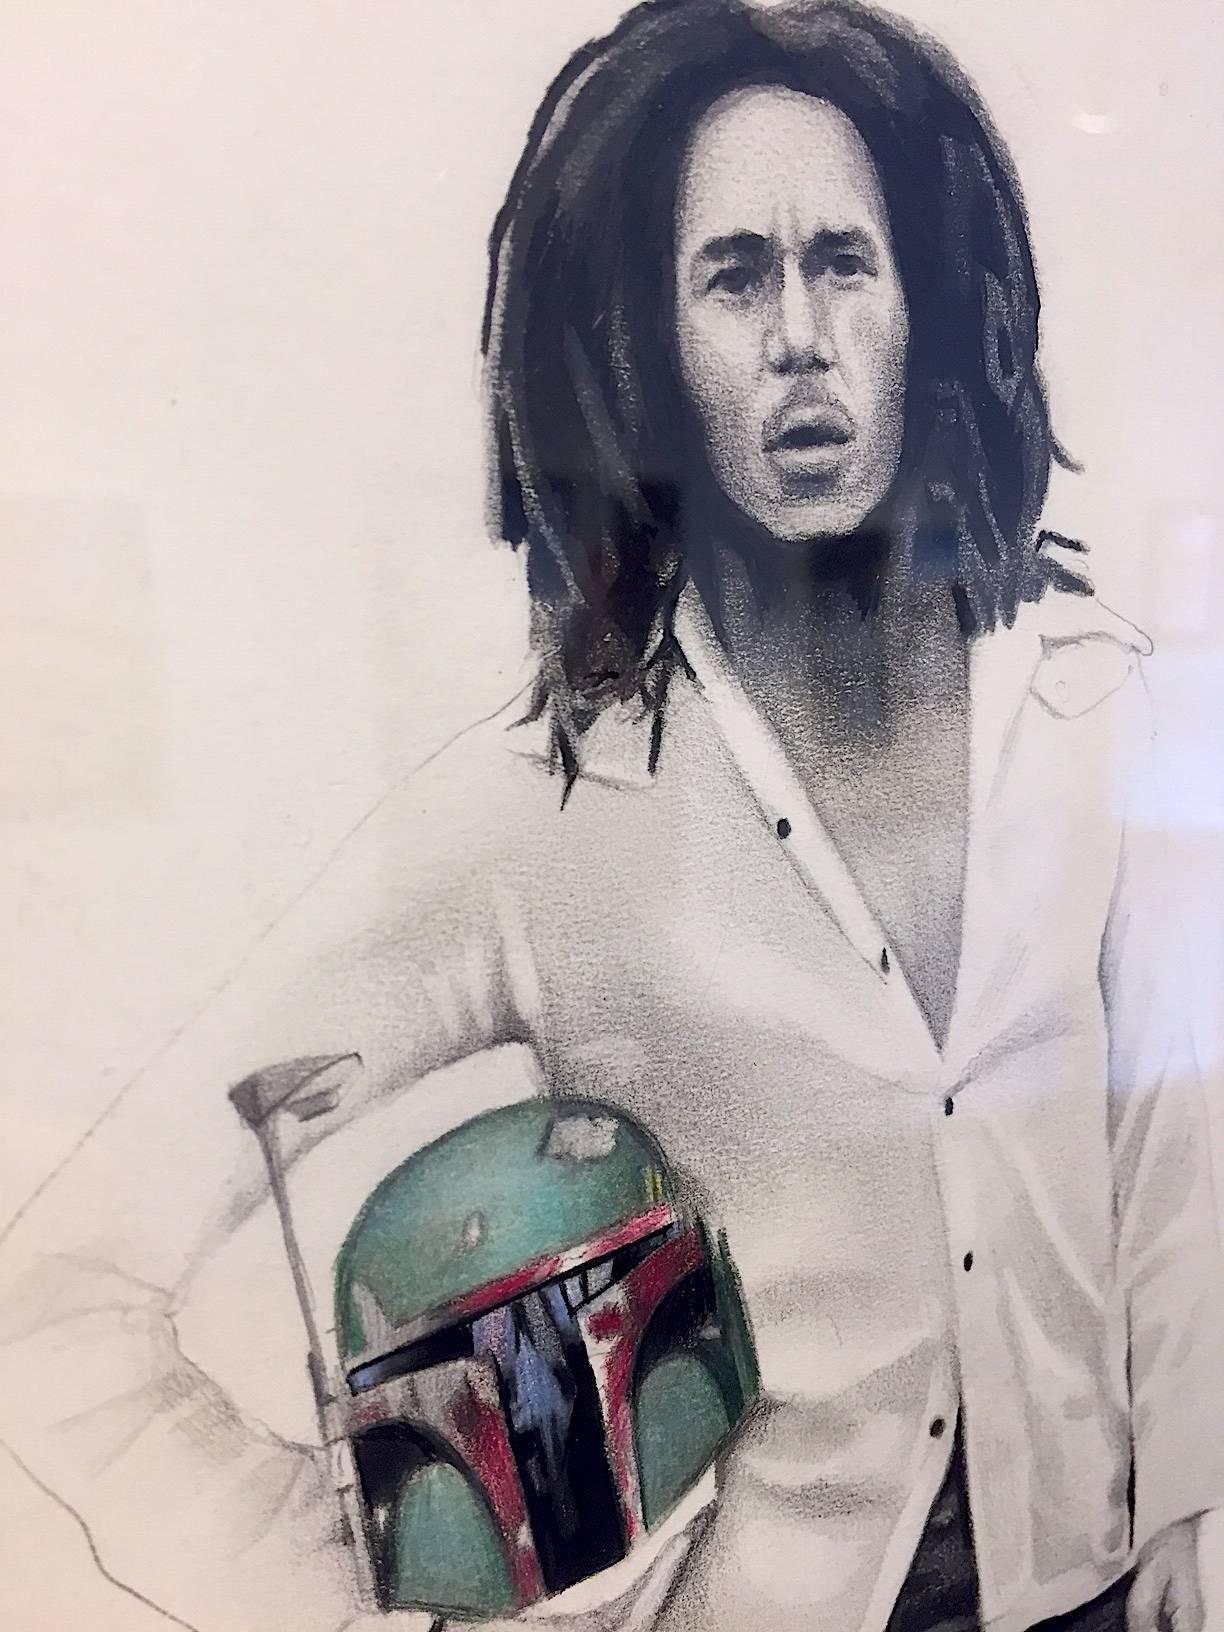 Bobba Marley (framed in black) - Pop Art Art by Zoe Moss